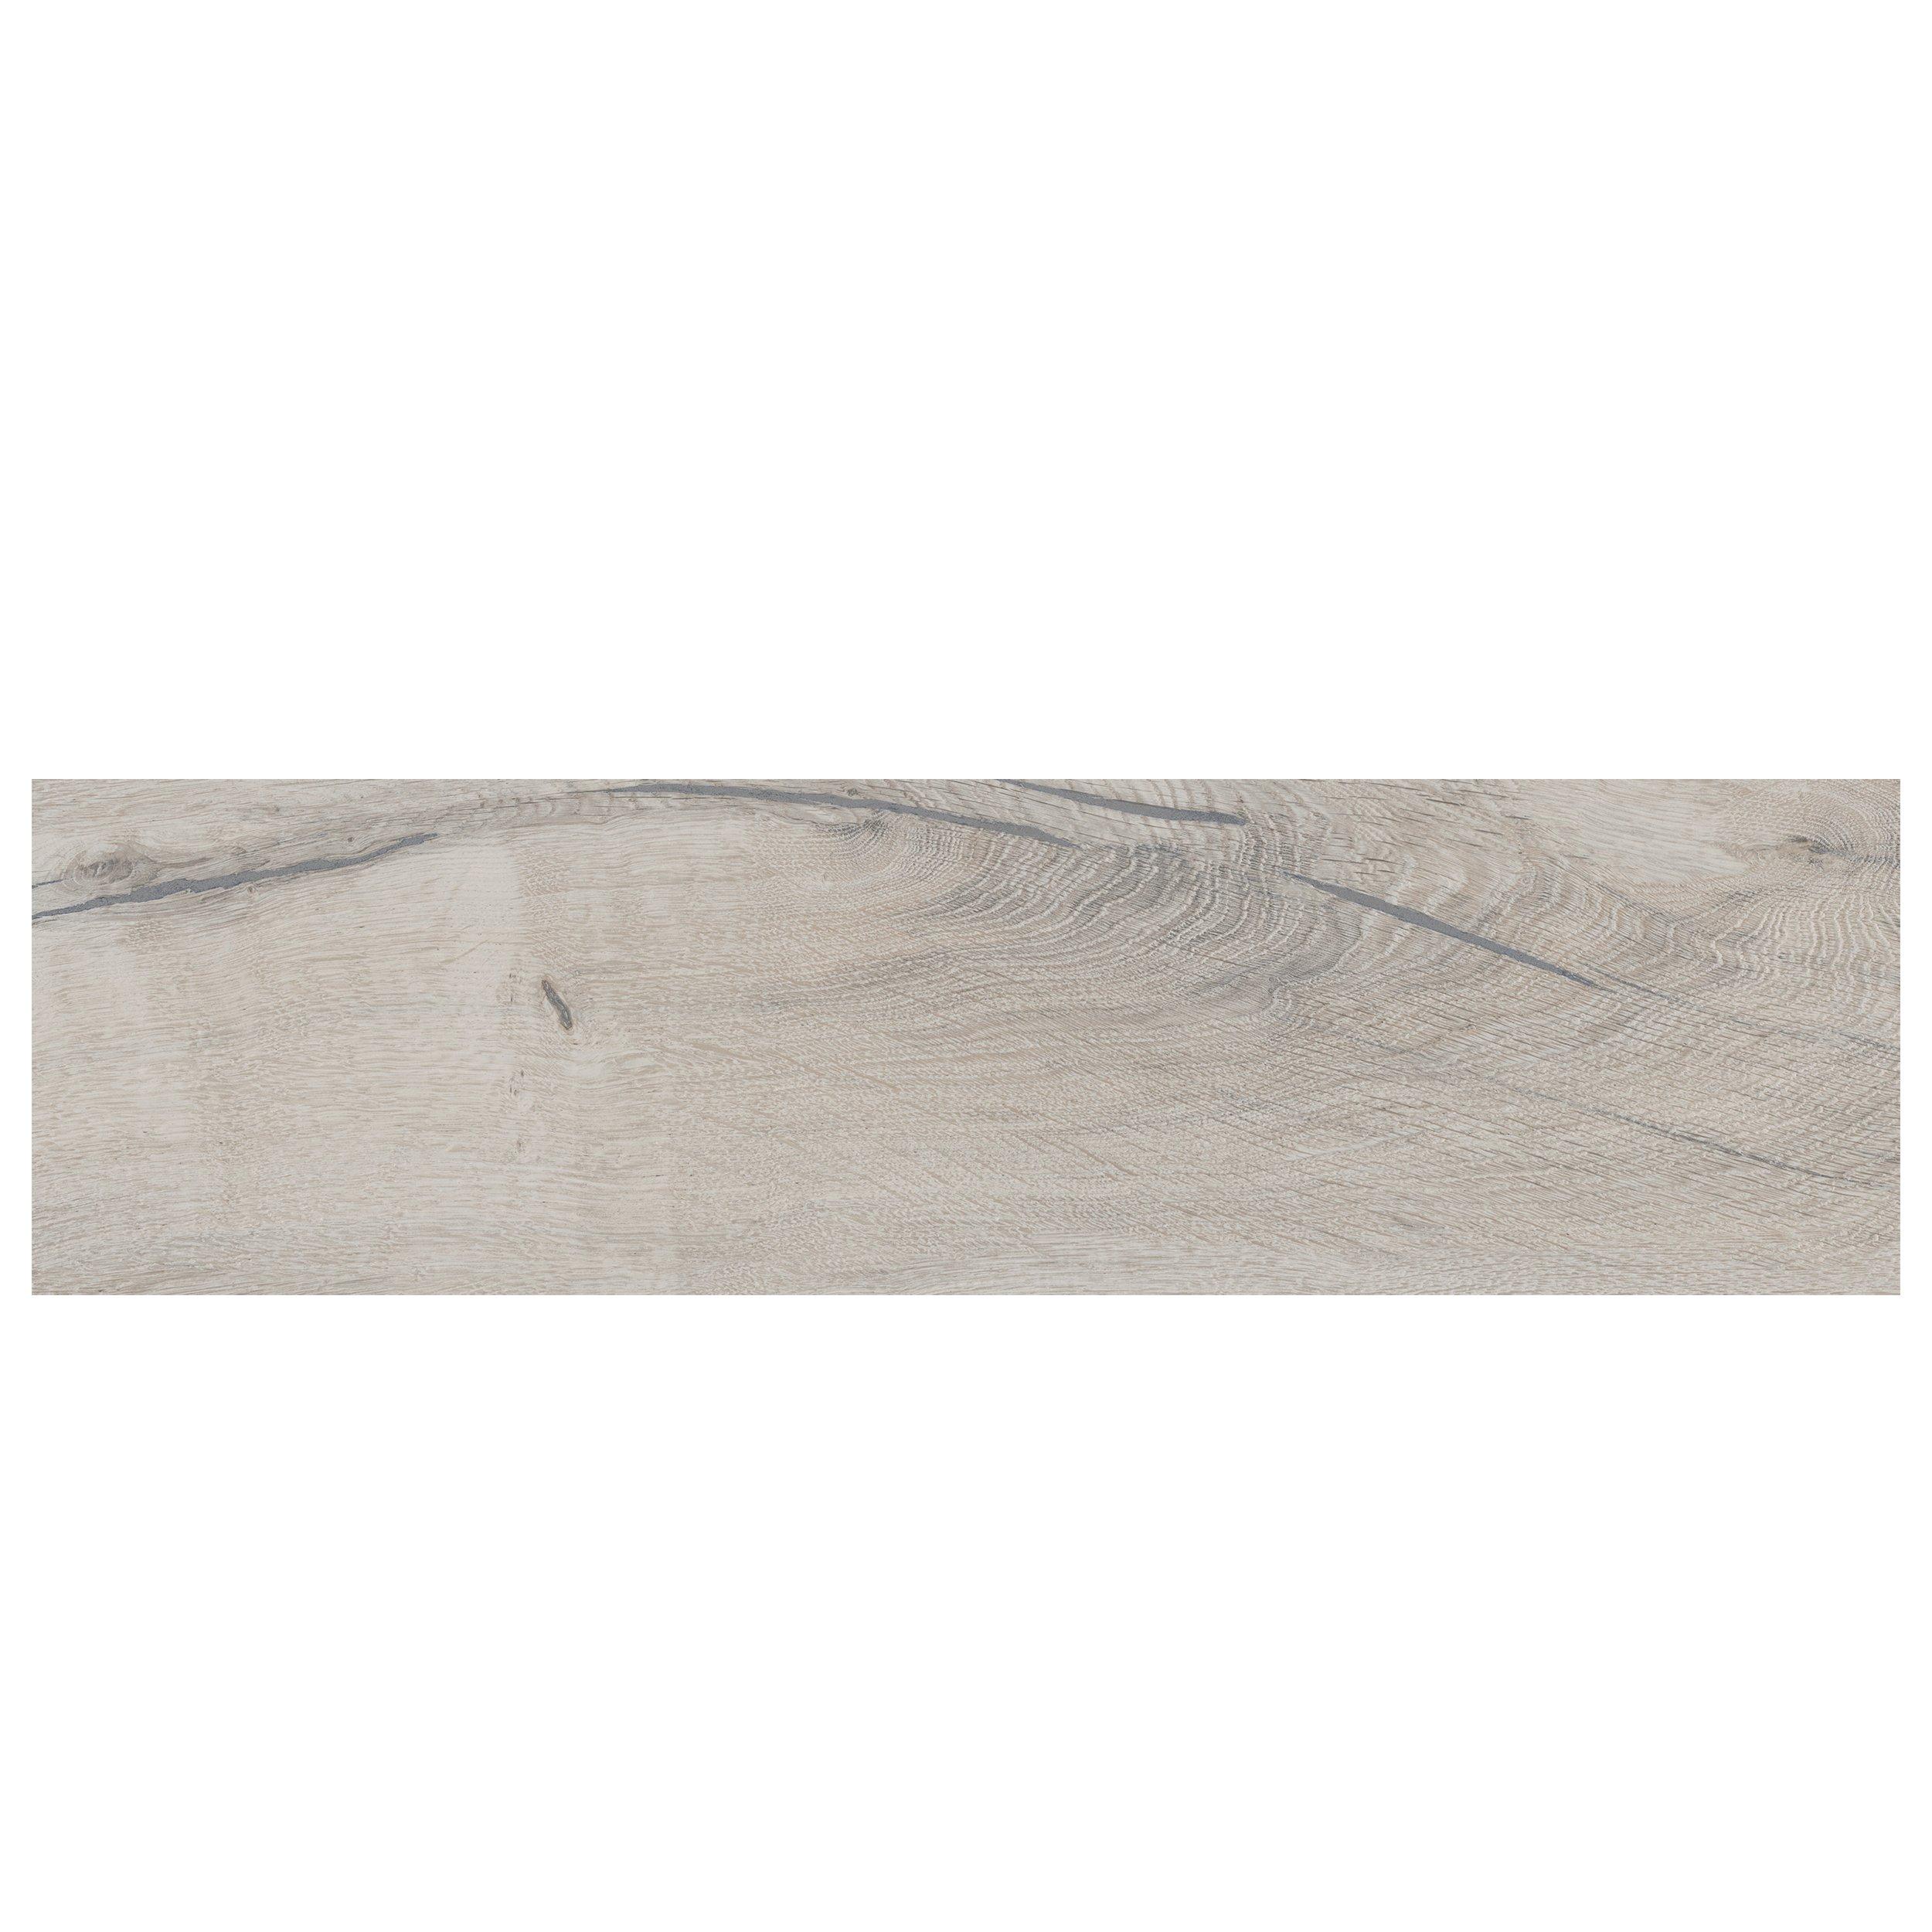 Alden Almond Wood Plank Porcelain Tile